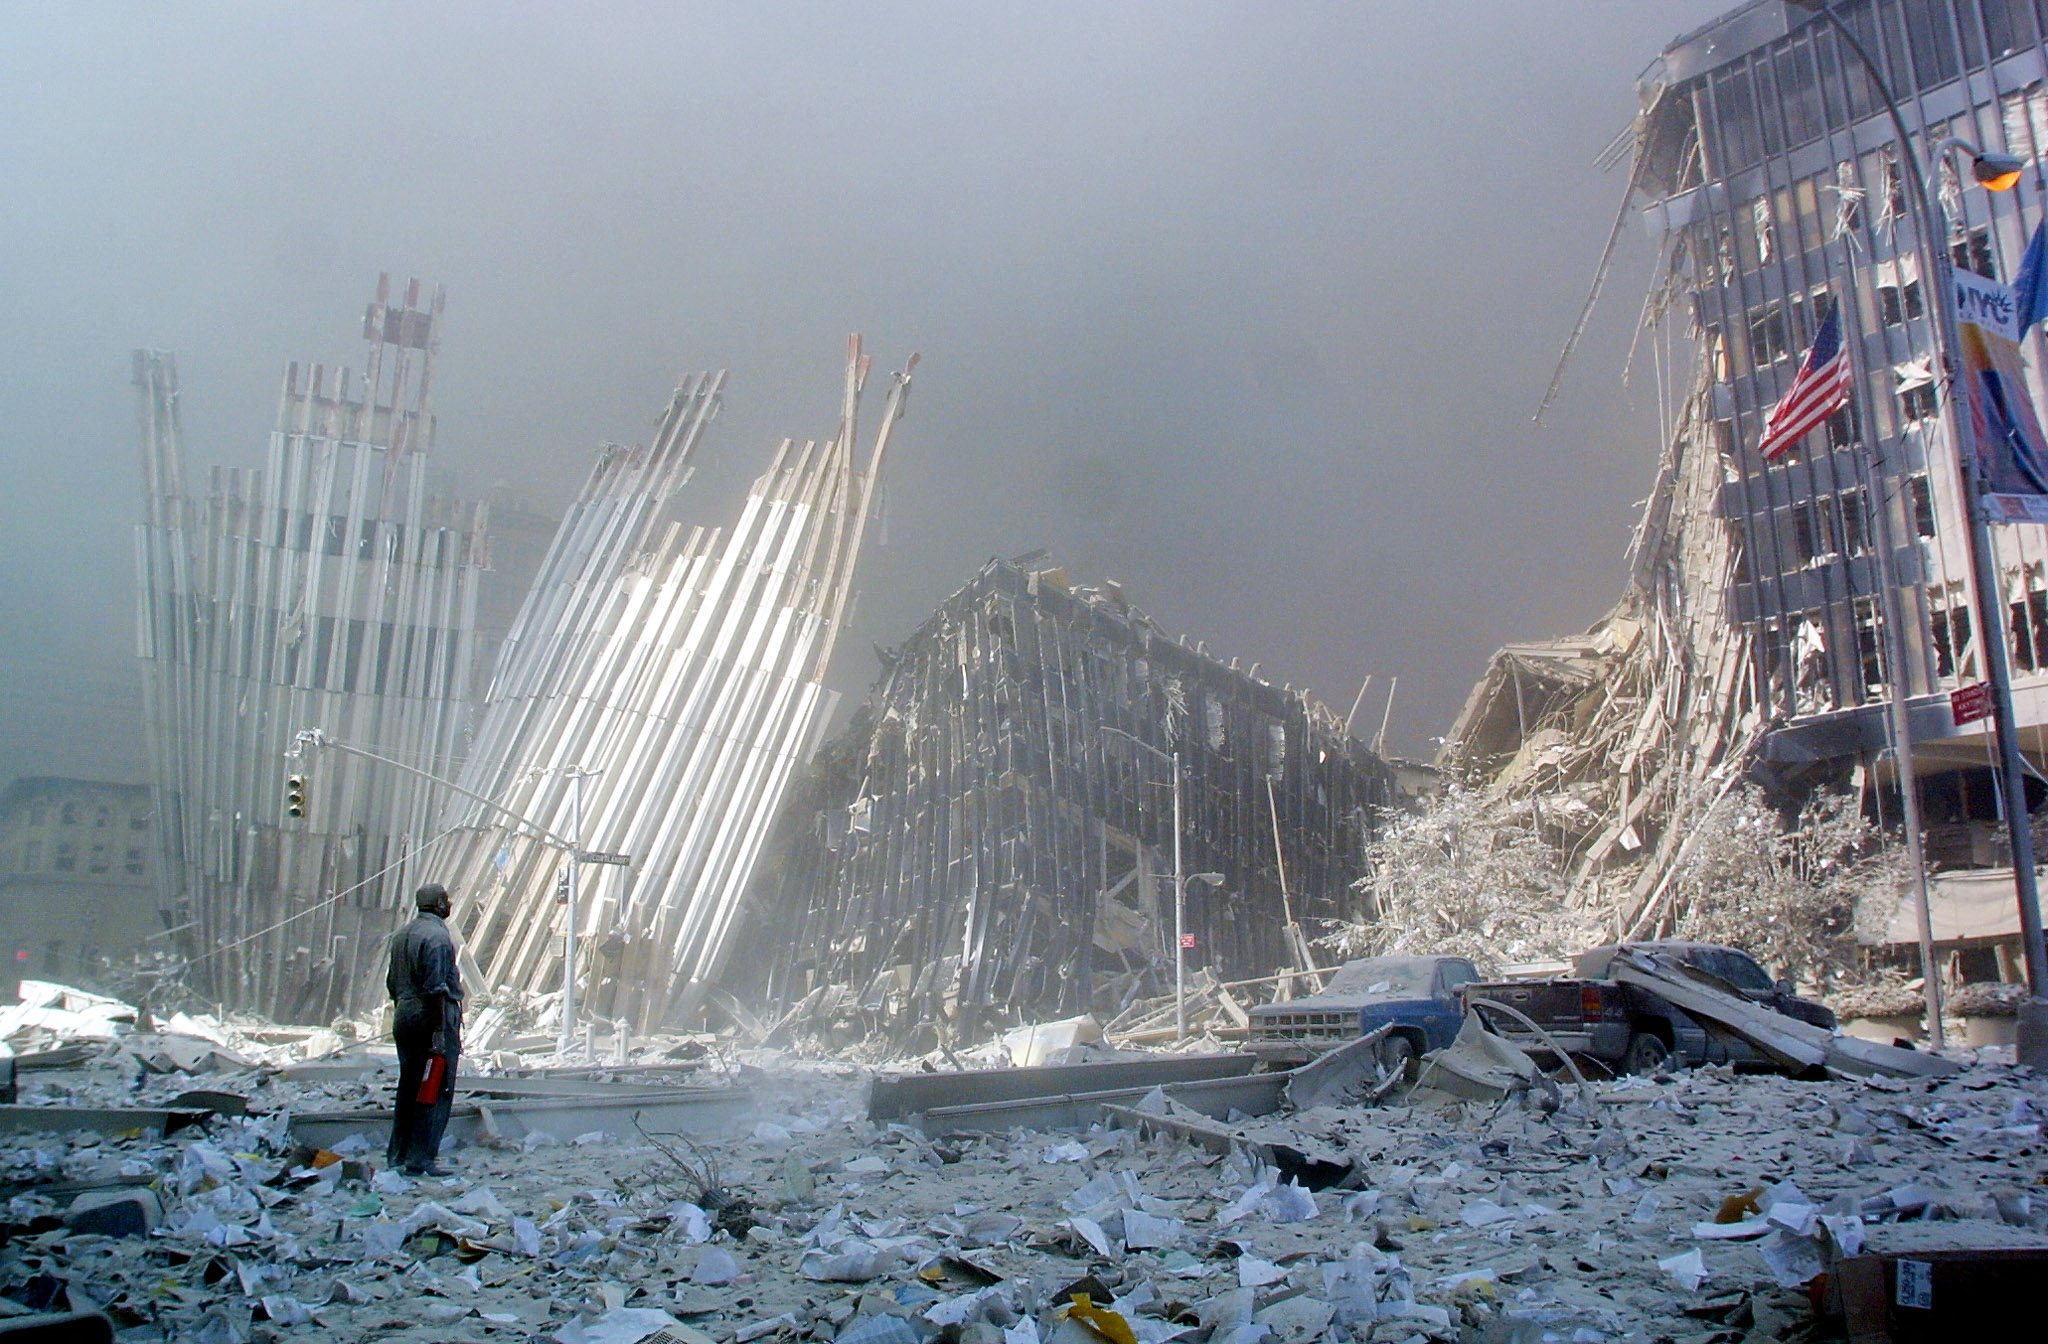 Cerca de 3 mil personas fallecieron en los ataques terroristas registrados hace casi 20 años. (Foto Prensa Libre: AFP)